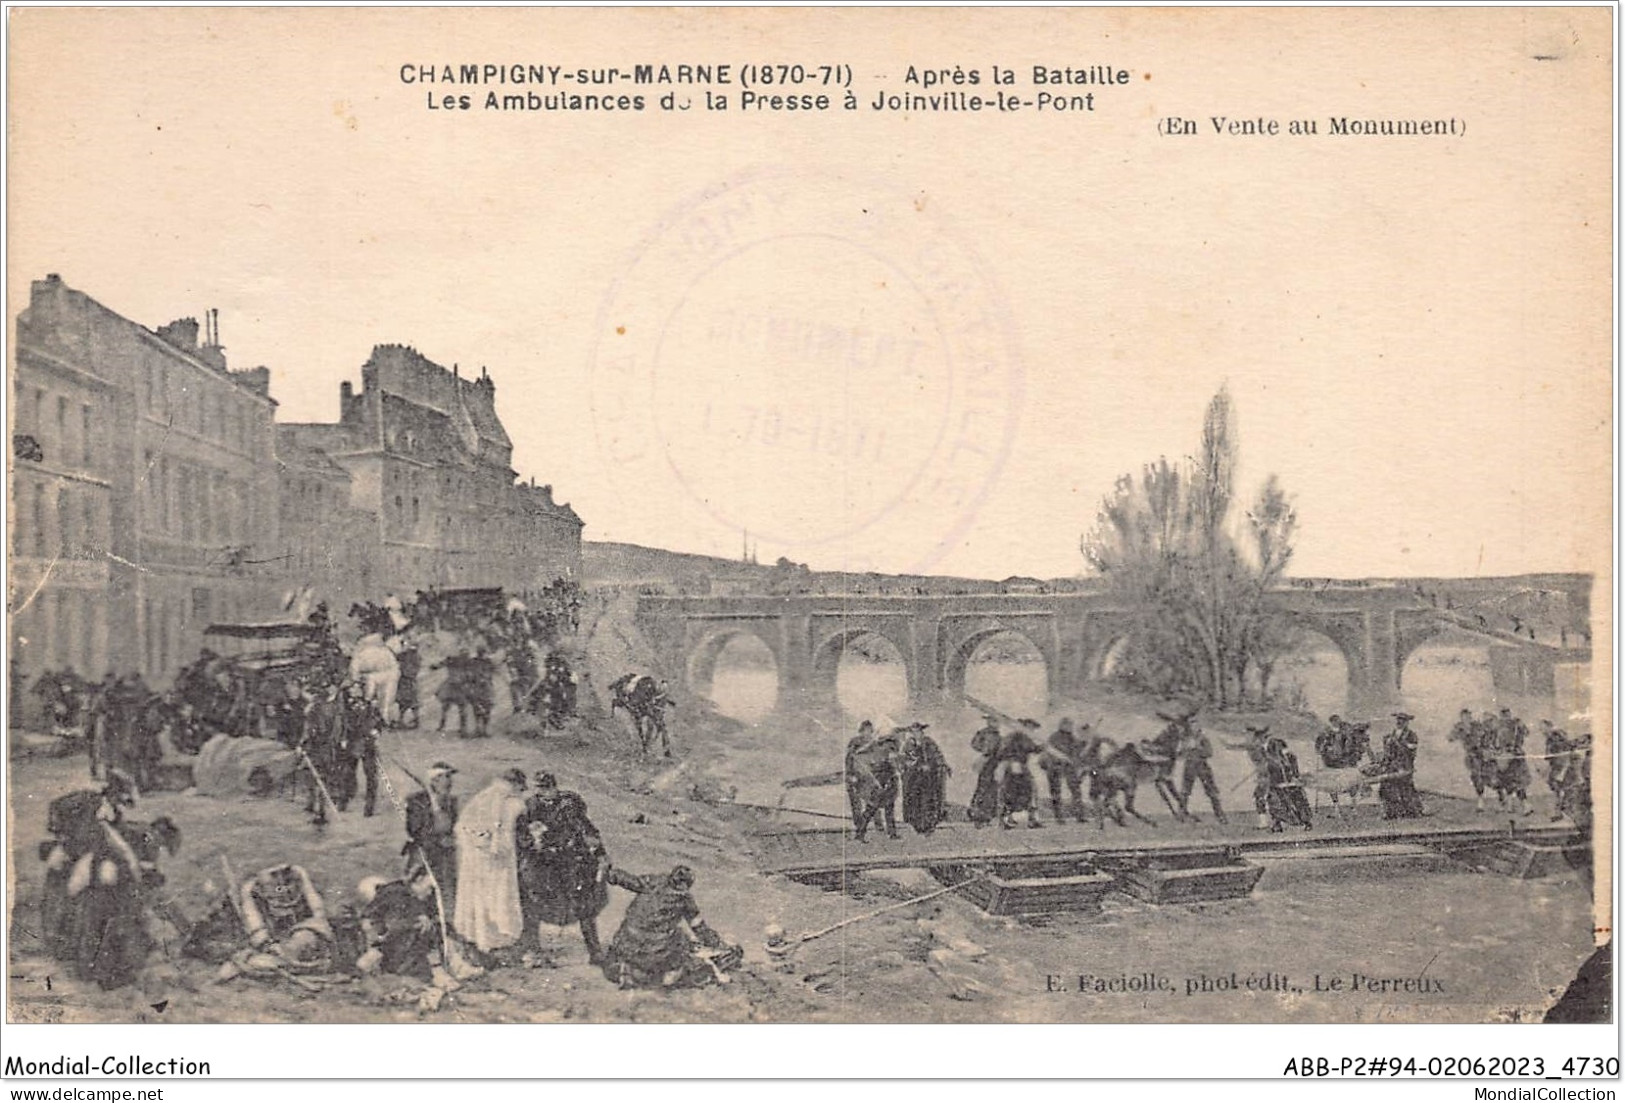 ABBP2-94-0134 - CHAMPIGNY-SUR-MARNE 1870-71 - Apres La Bataille - Ambulances De La Presse A JOINVILLE-LE-PONT - Champigny Sur Marne